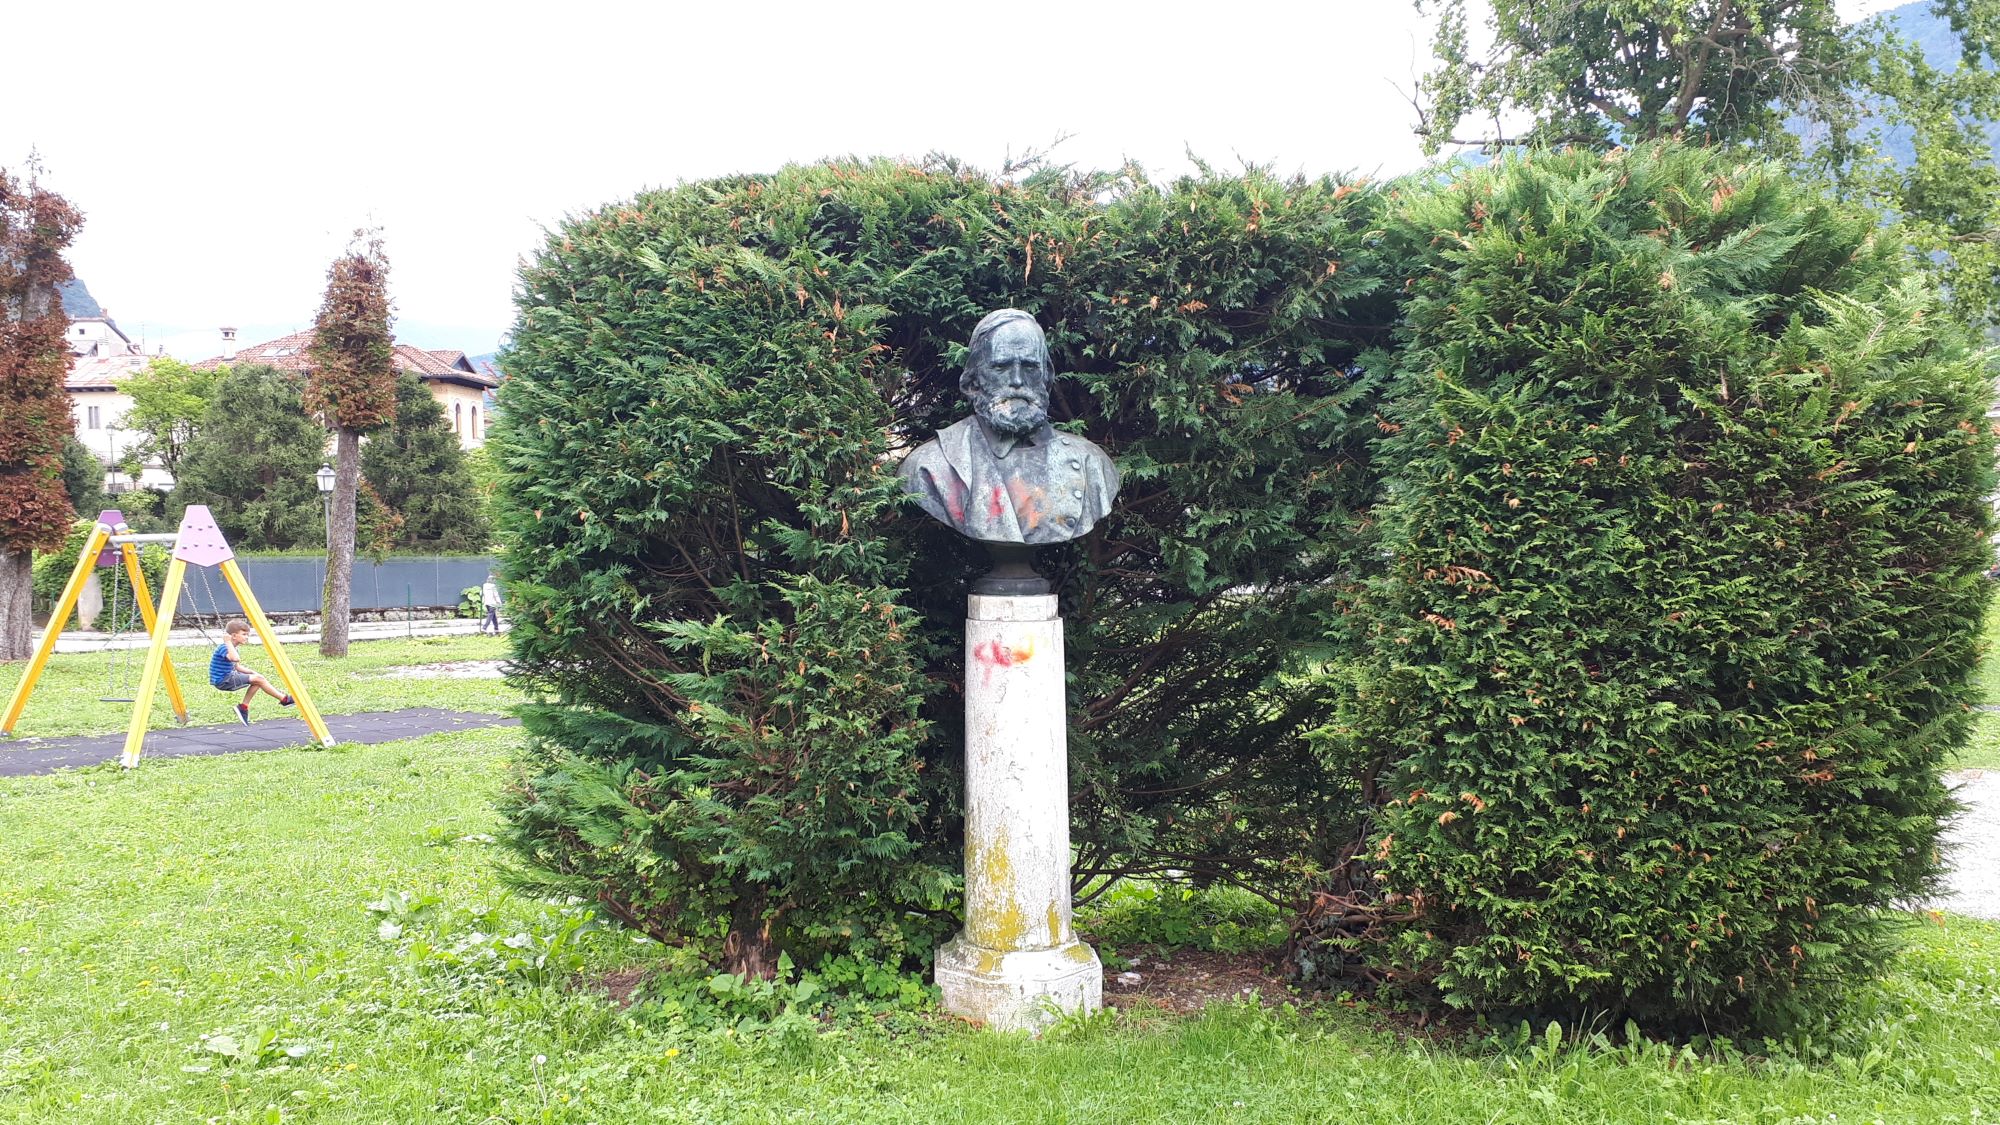 Parco della Rimembranza di Feltre (parco, commemorativo ai caduti della prima guerra mondiale) - Feltre (BL) 